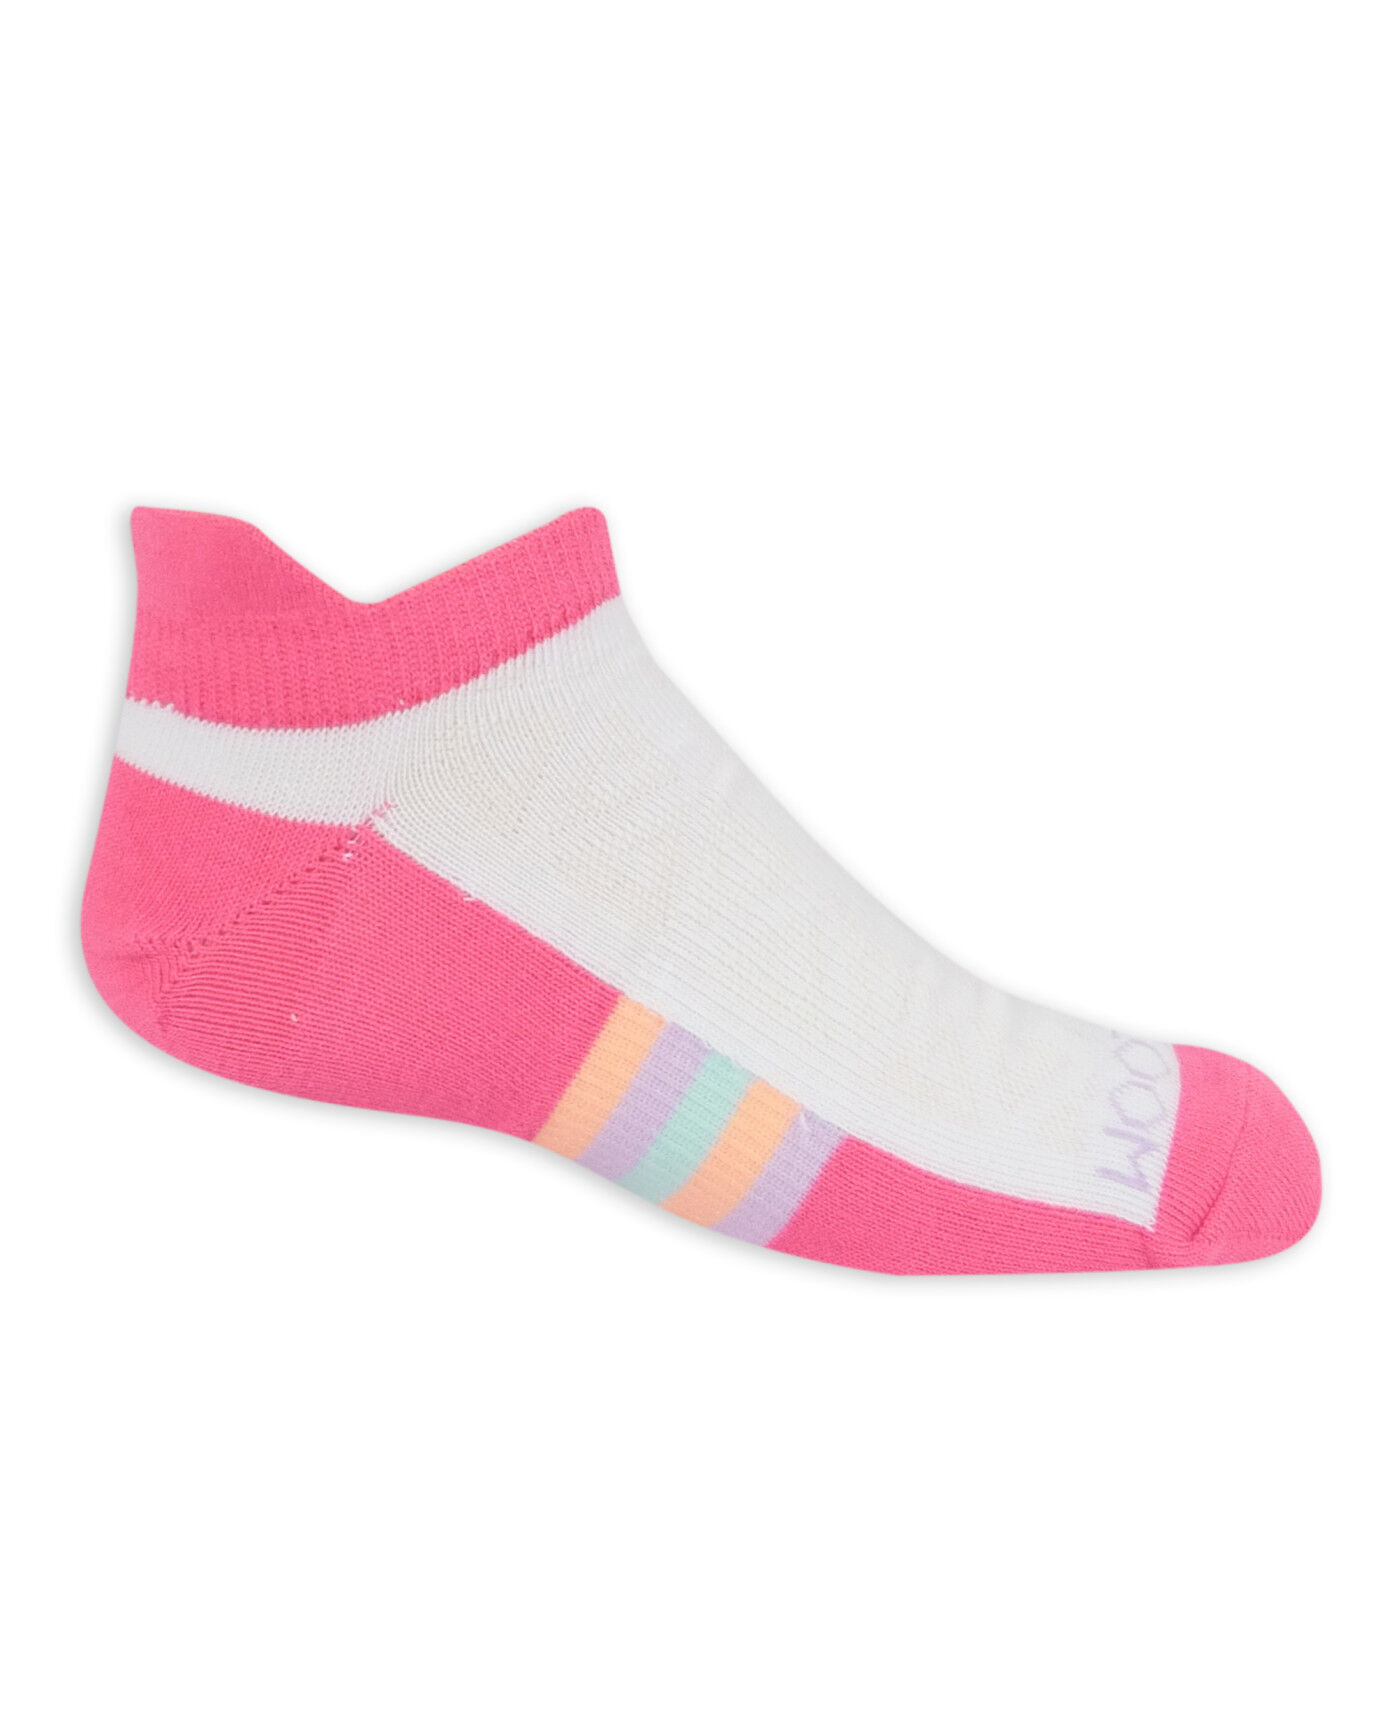 New In Bag 10 Pairs Anti-slip Socks 6-18 Months Kids Baby Socks Non Slip Girl 